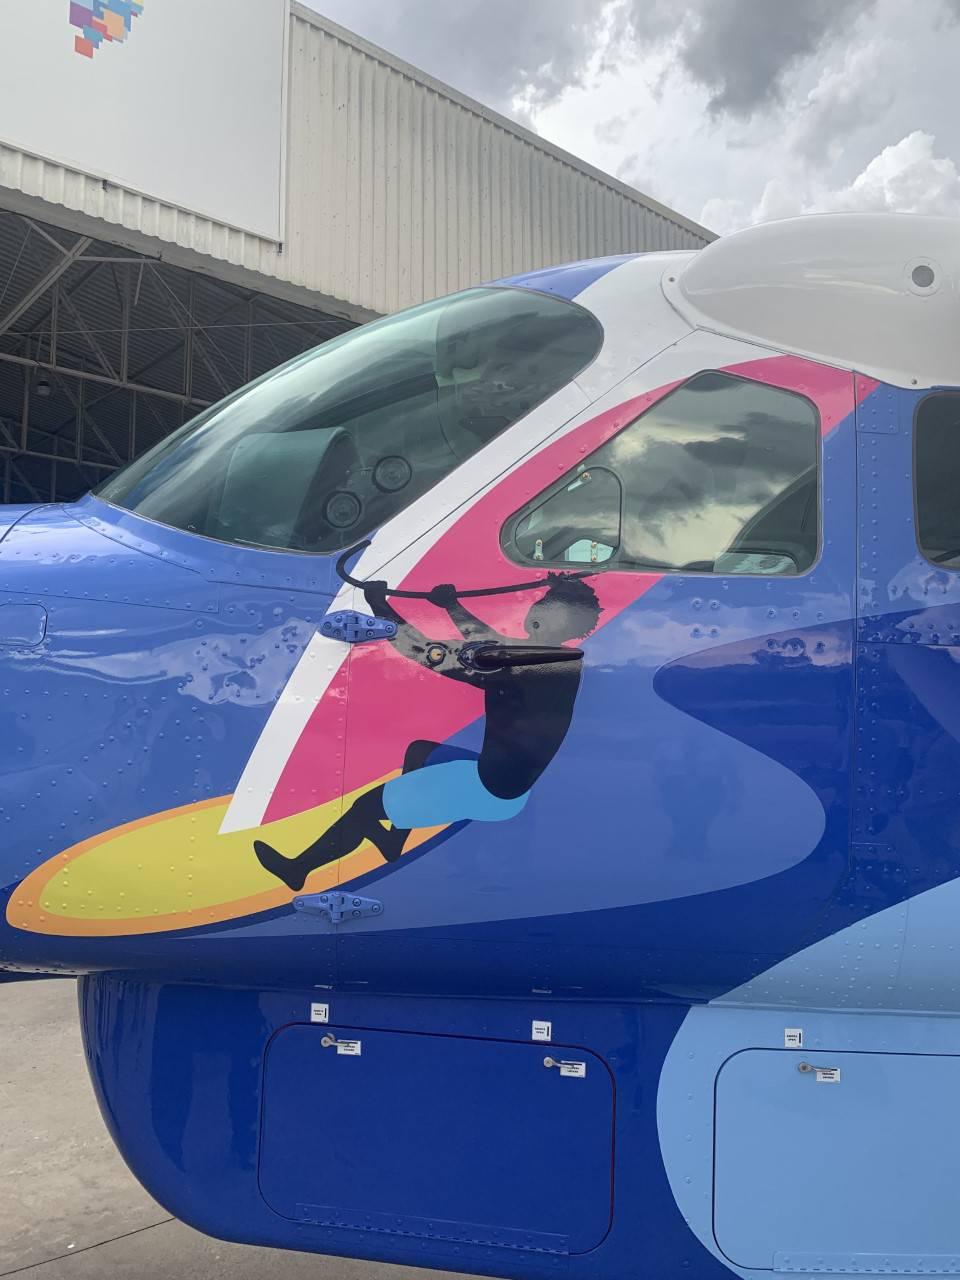 Novo avião da Azul Conecta que remete à Rota das Emoções permitirá